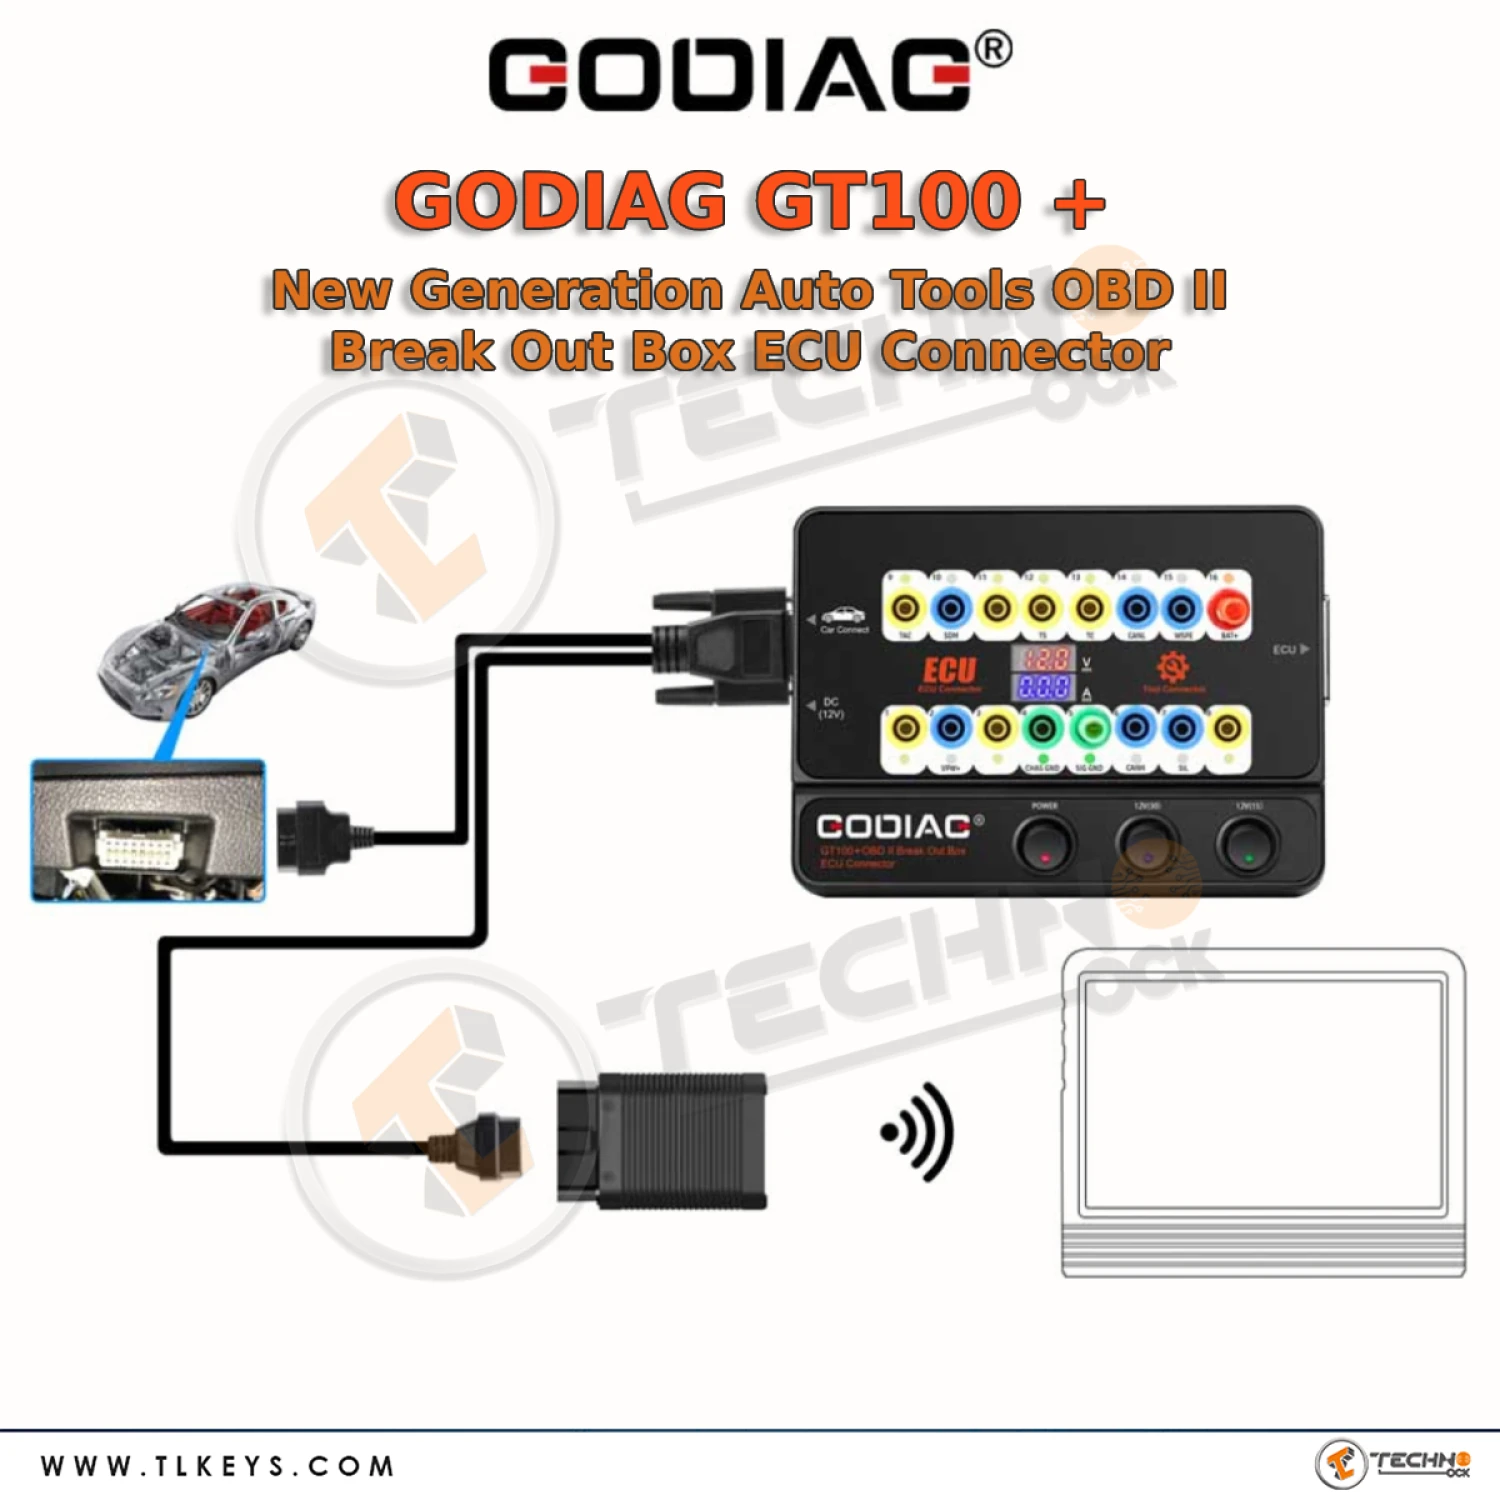 GODIAG GT100 diagnostic programming coding tool can send communication signals